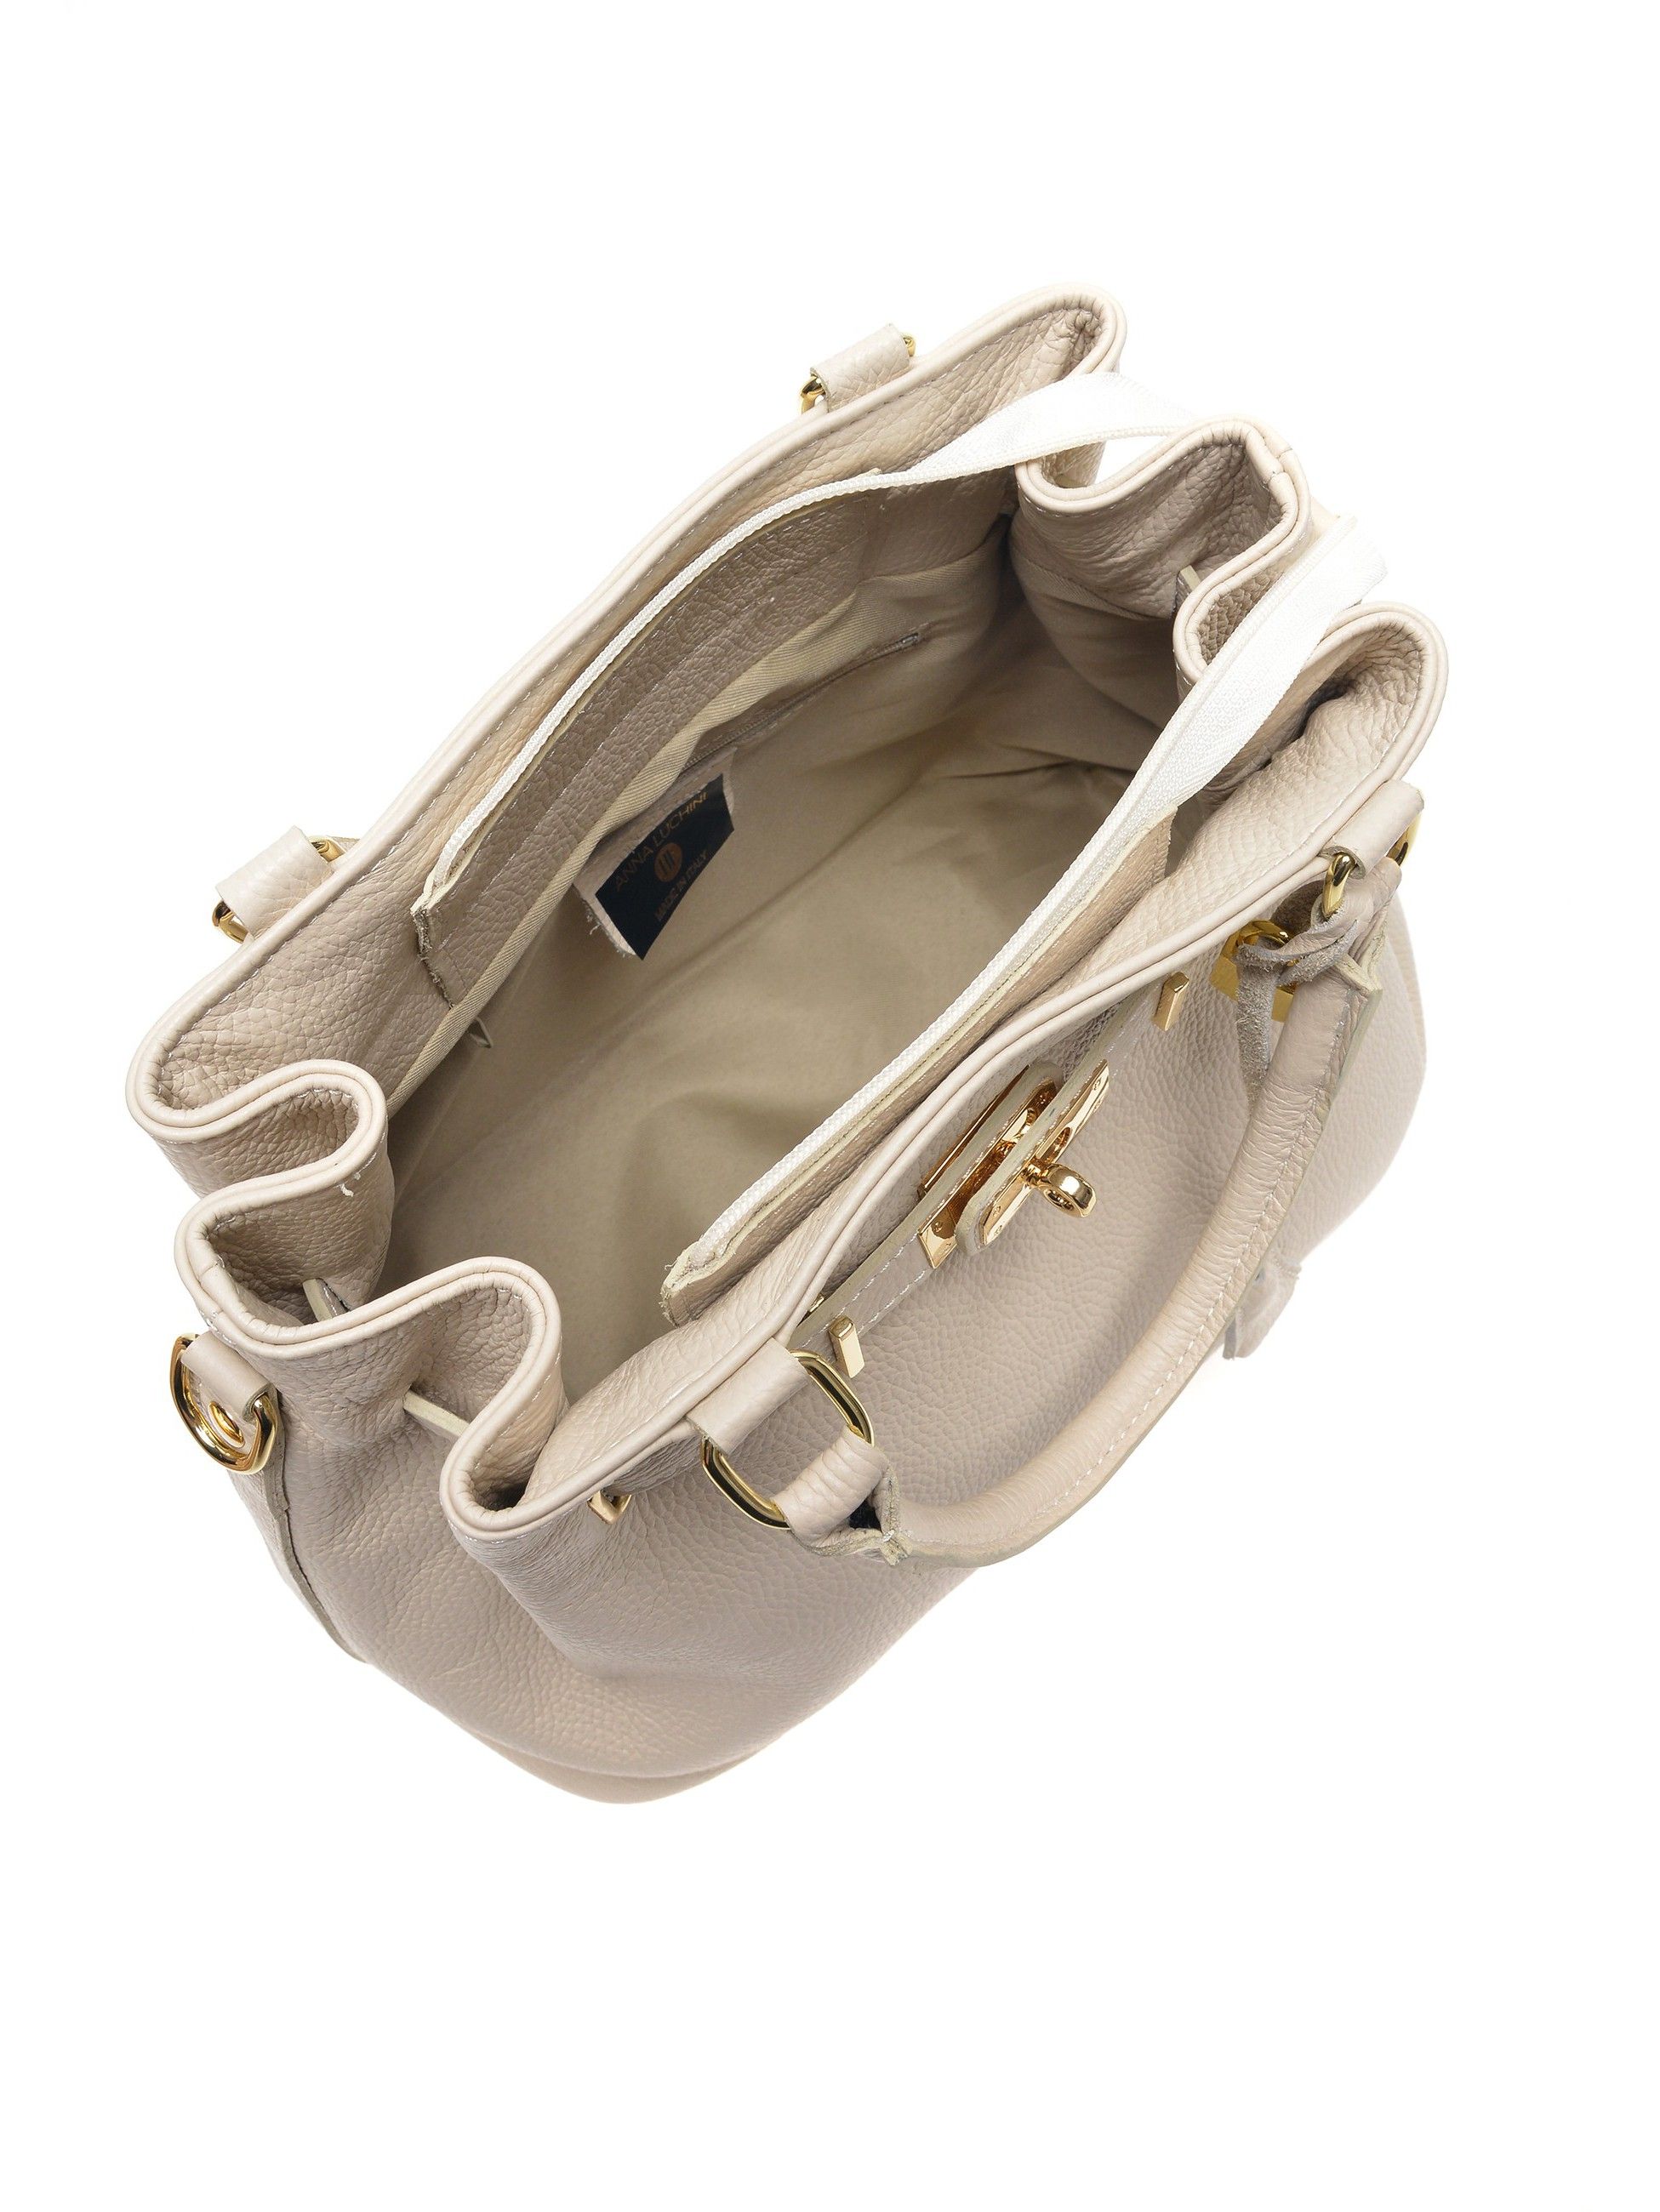 Handbag
100% cow leather
Top zip closure
Buckle detail
Inner zip pocket
Dimensions (L): 28.5x38x18 cm
Handle: 34 cm
Shoulder strap: 100 cm fix